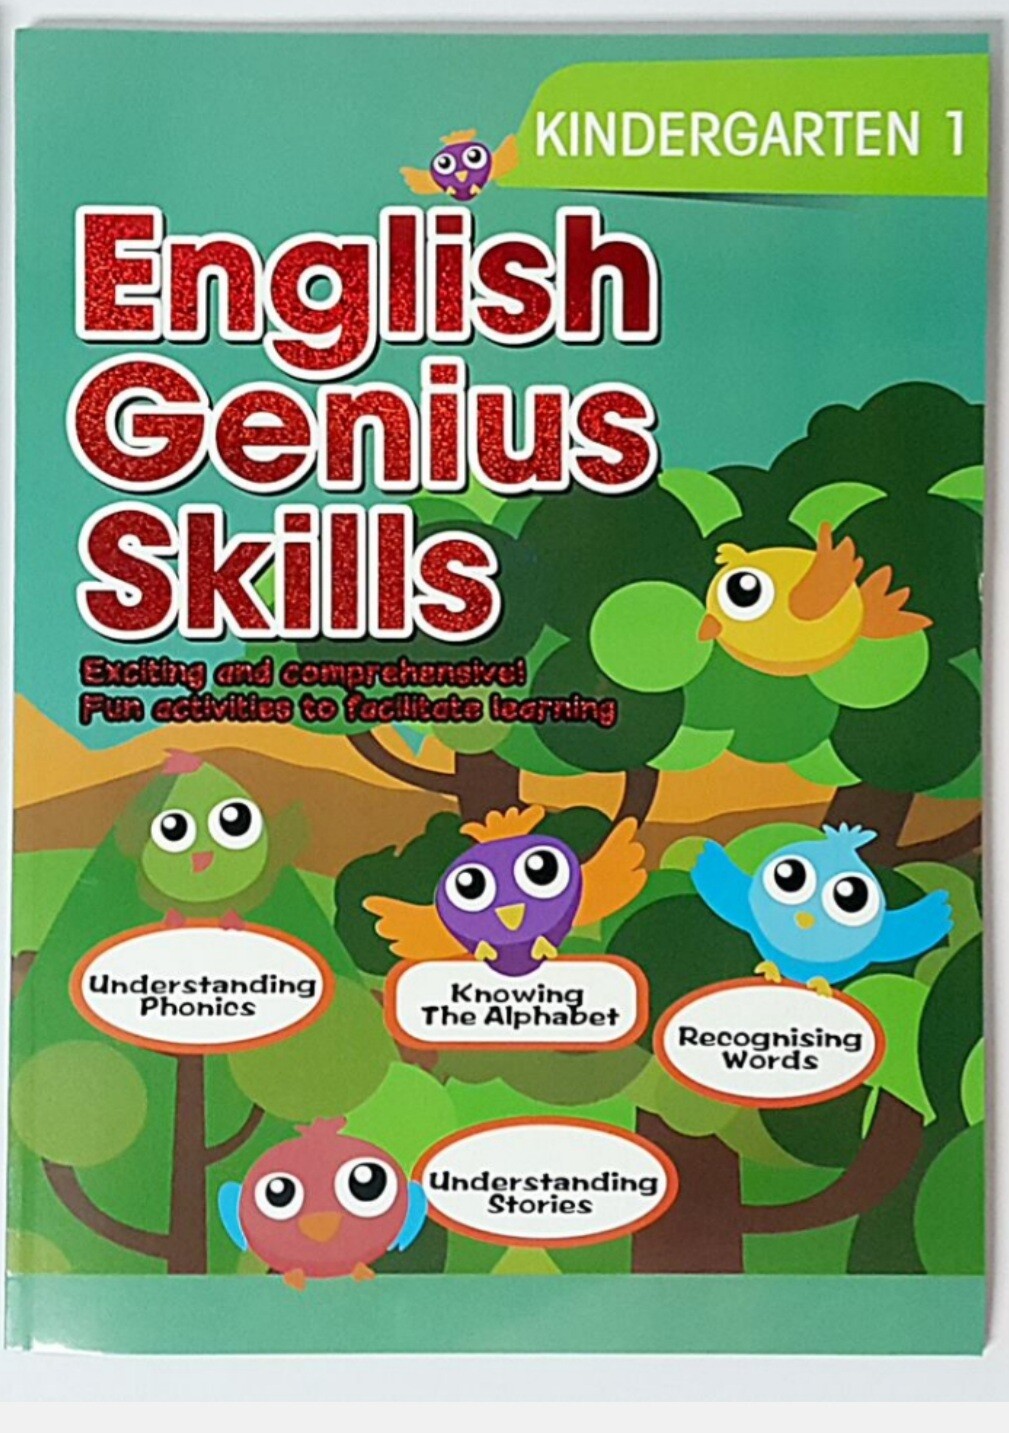 Kids Genius Skills Kindergarten1